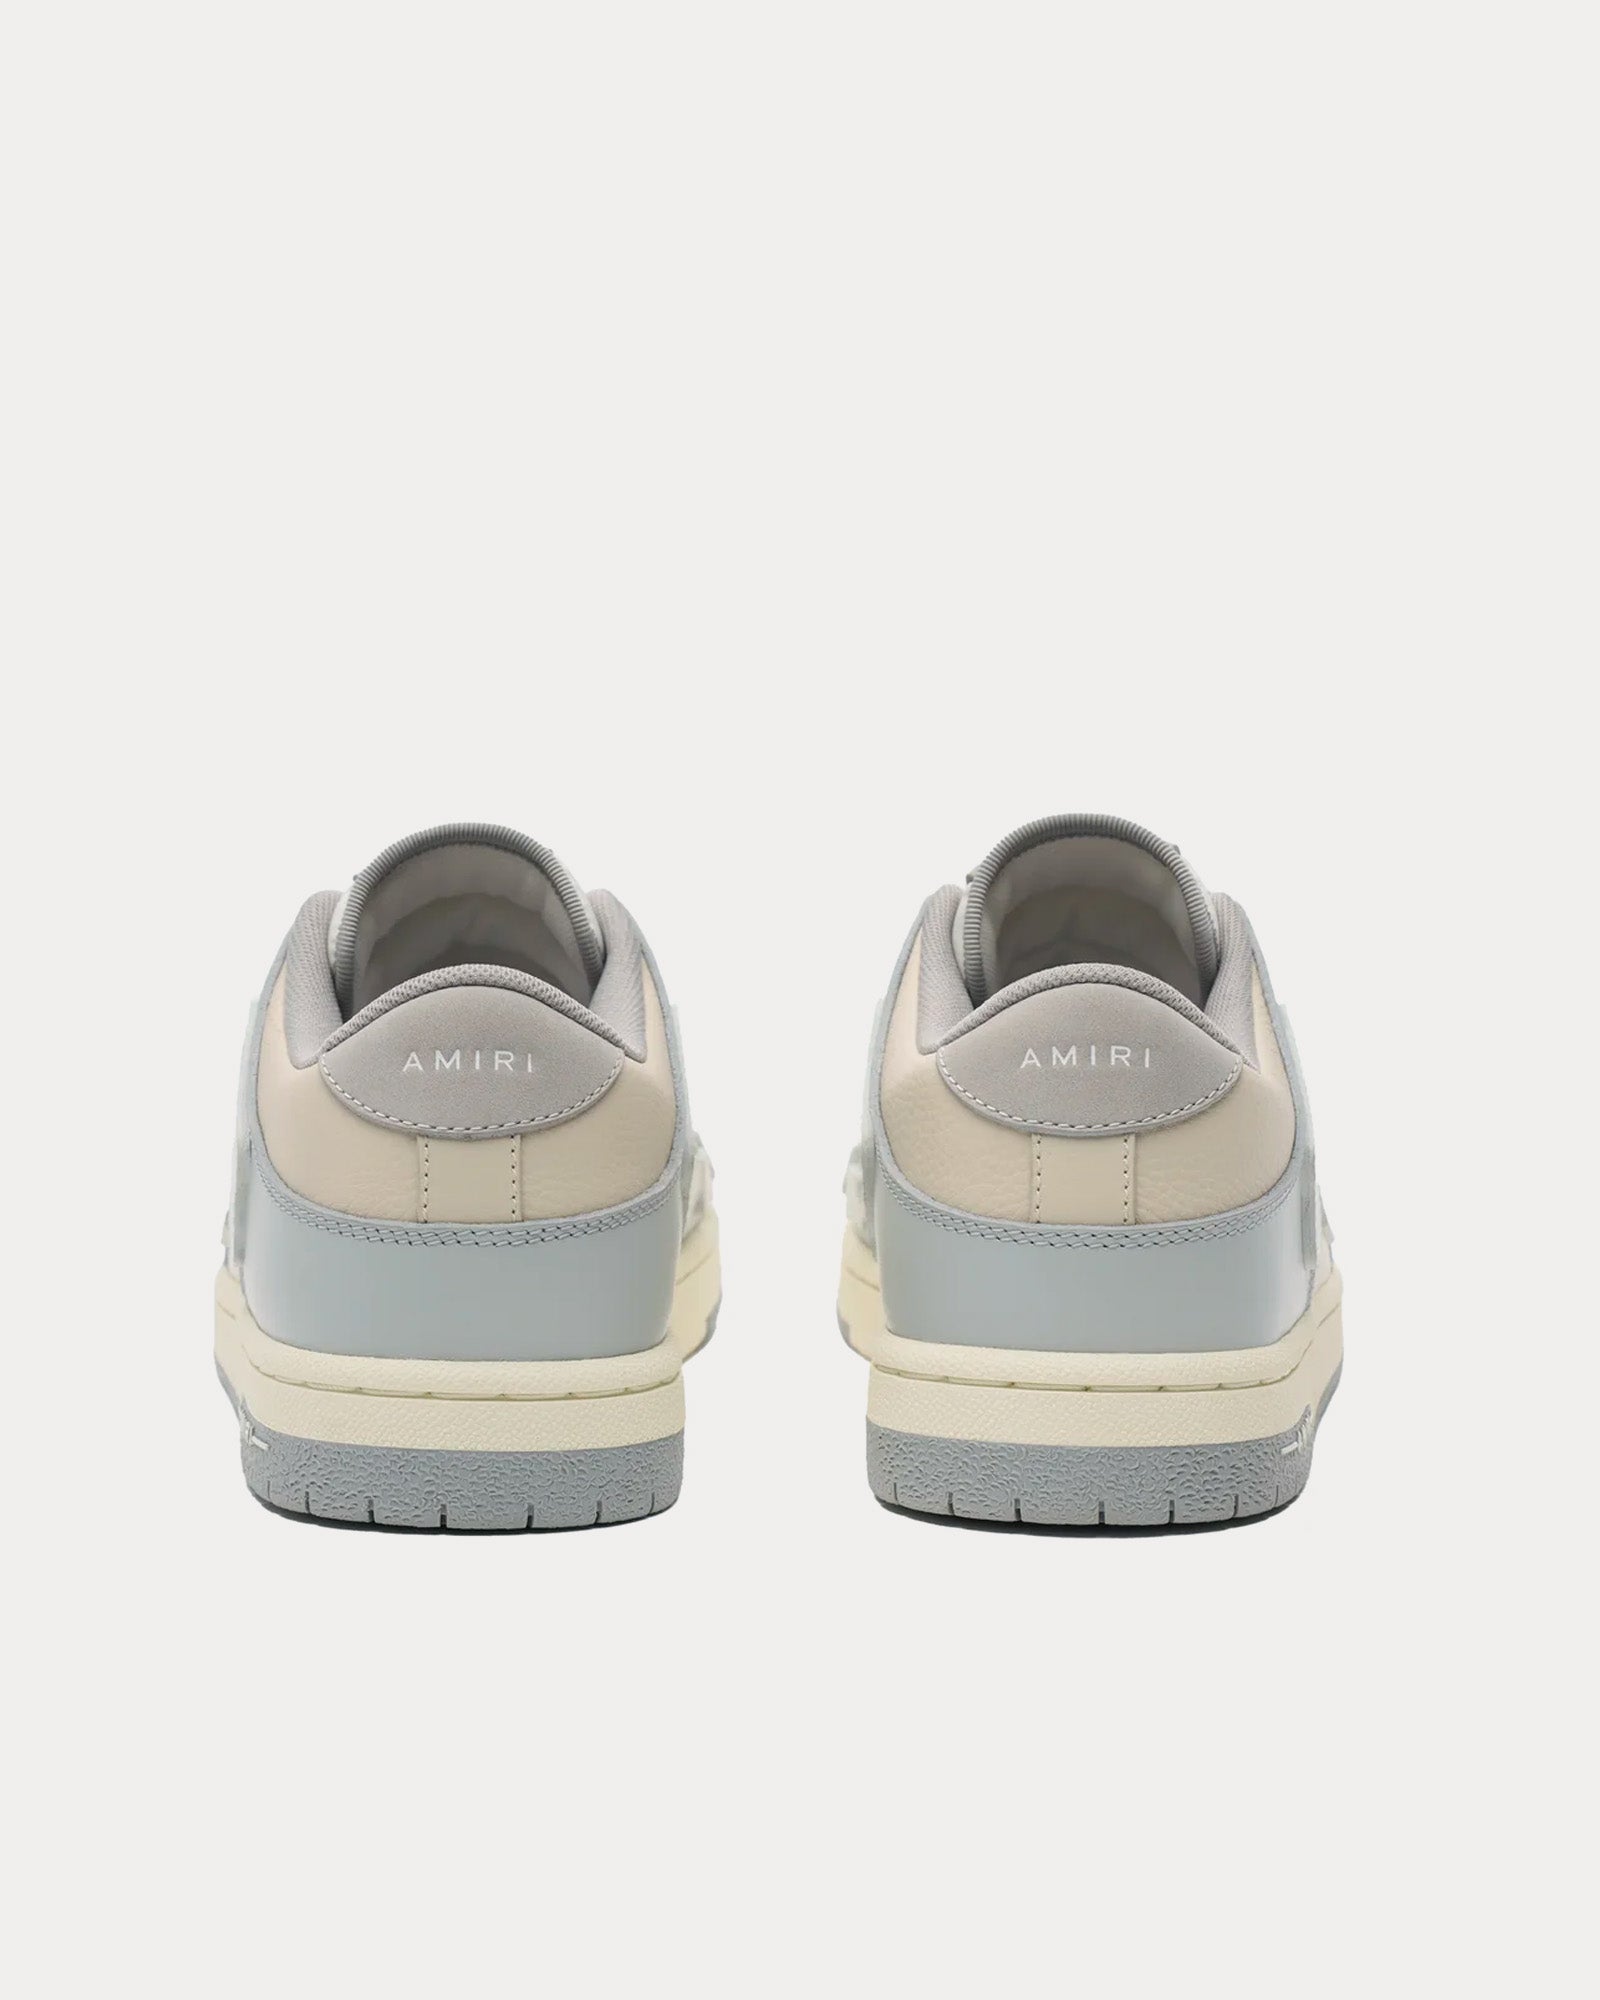 AMIRI - Skel-Top Leather Grey Low Top Sneakers